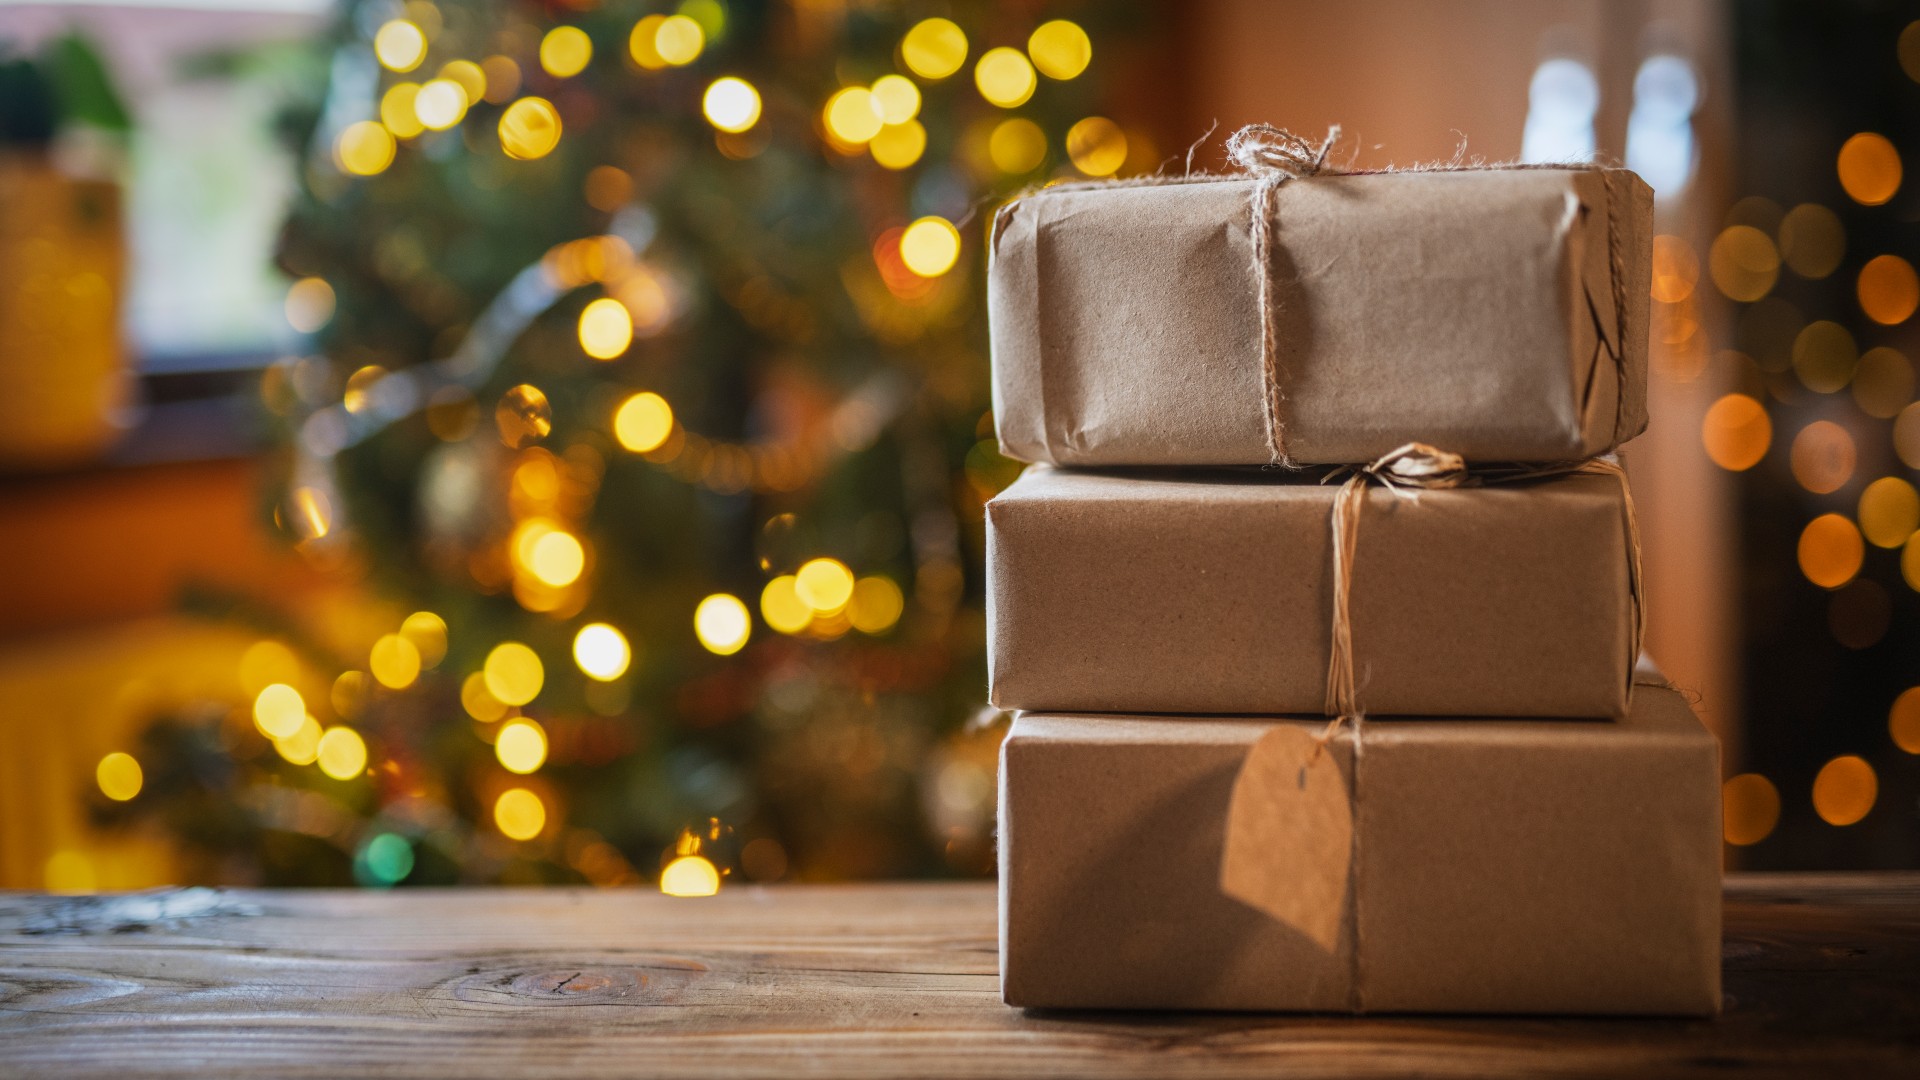 Cómo gestionar el exceso de regalos a los niños en Navidad